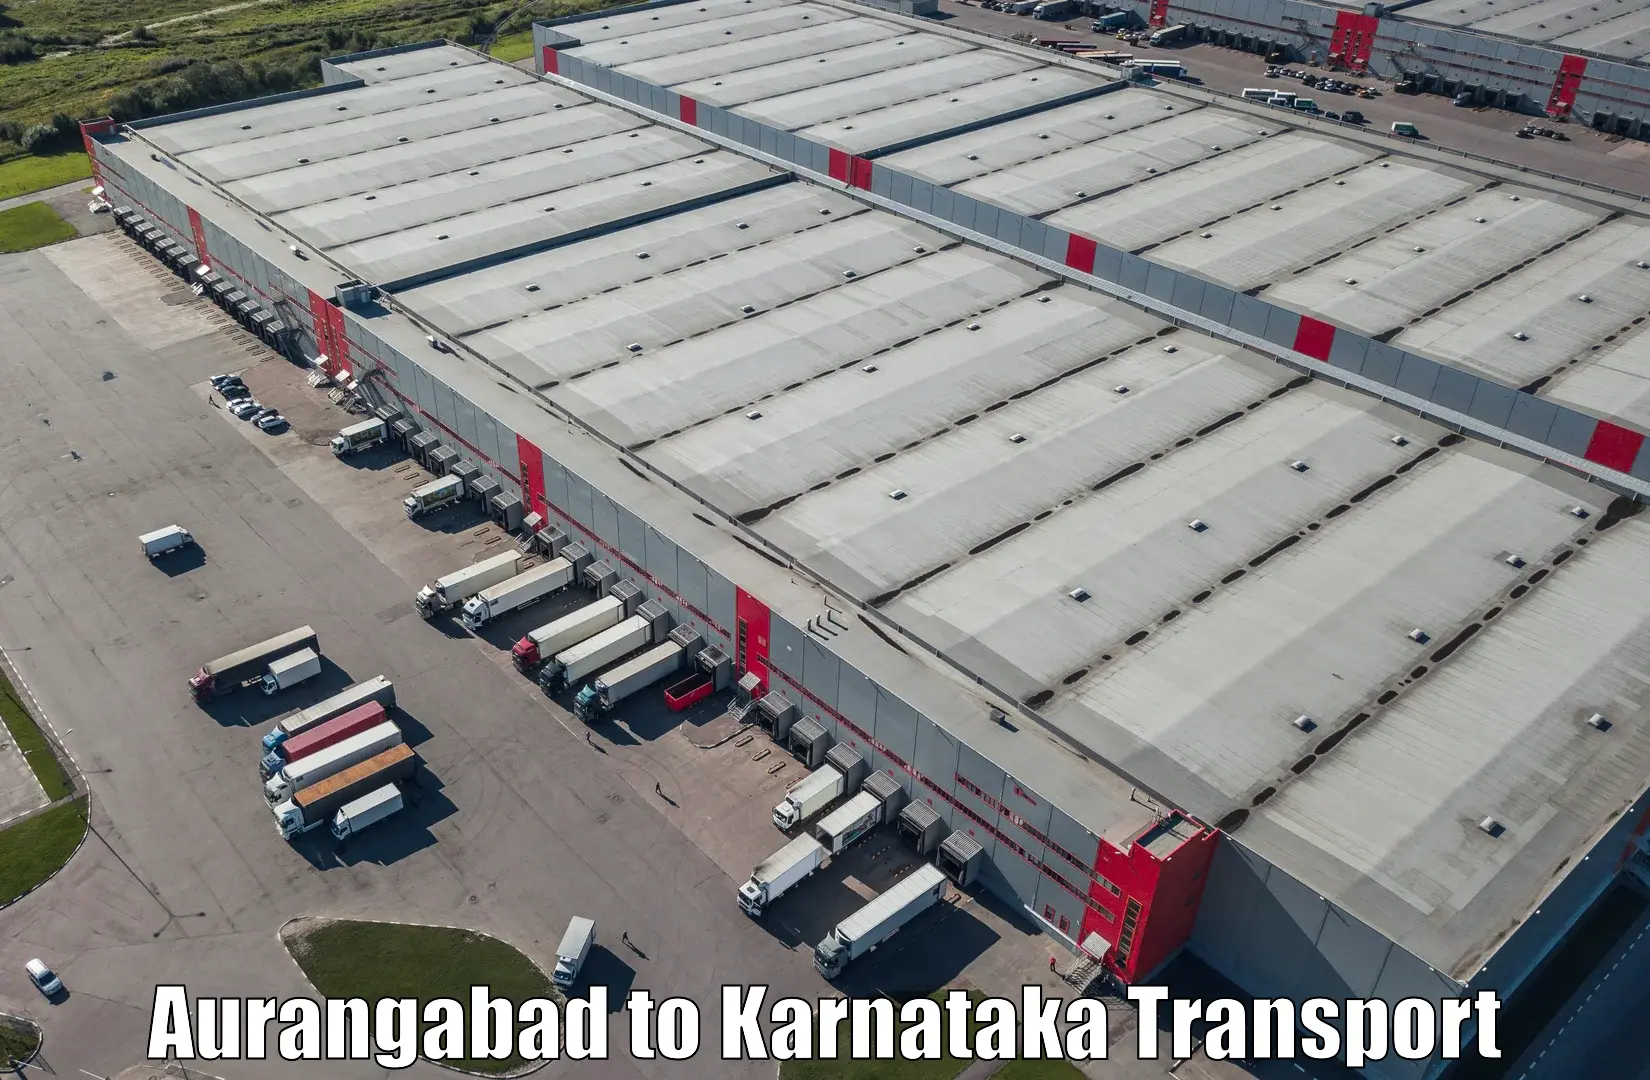 Land transport services Aurangabad to Belagavi